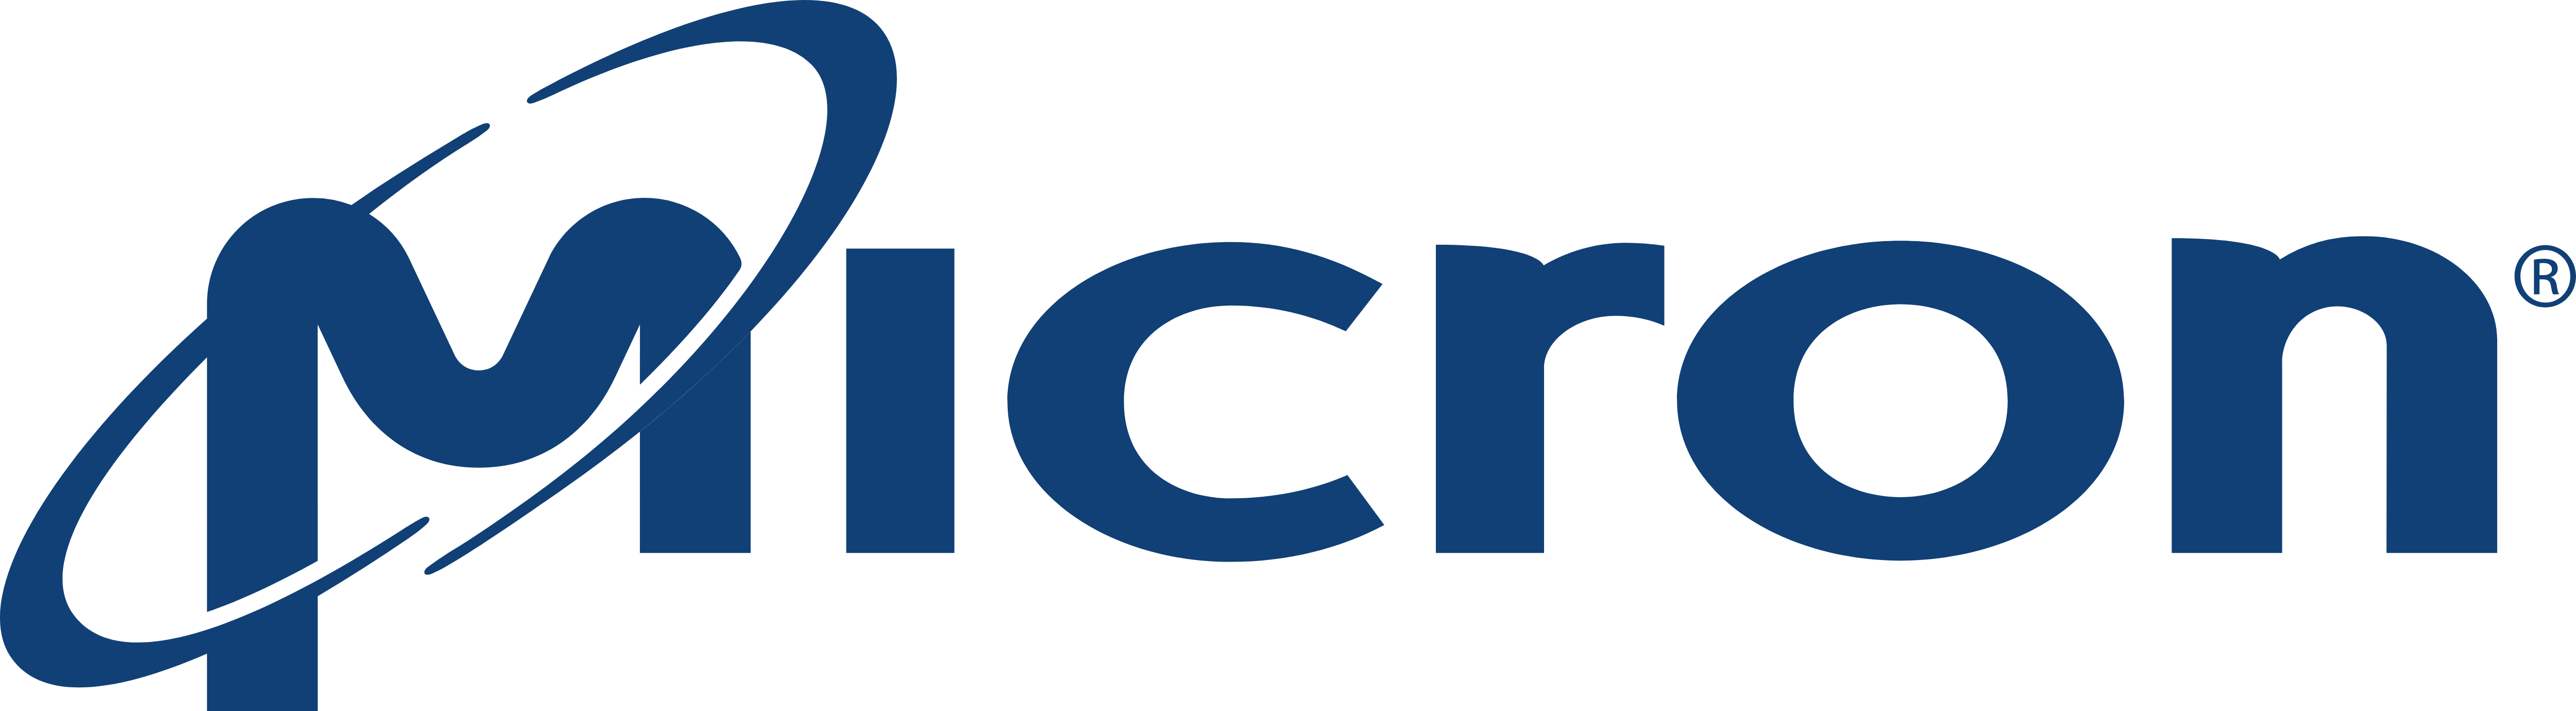 Micron Technology Logo - Micron Technology – Logos Download